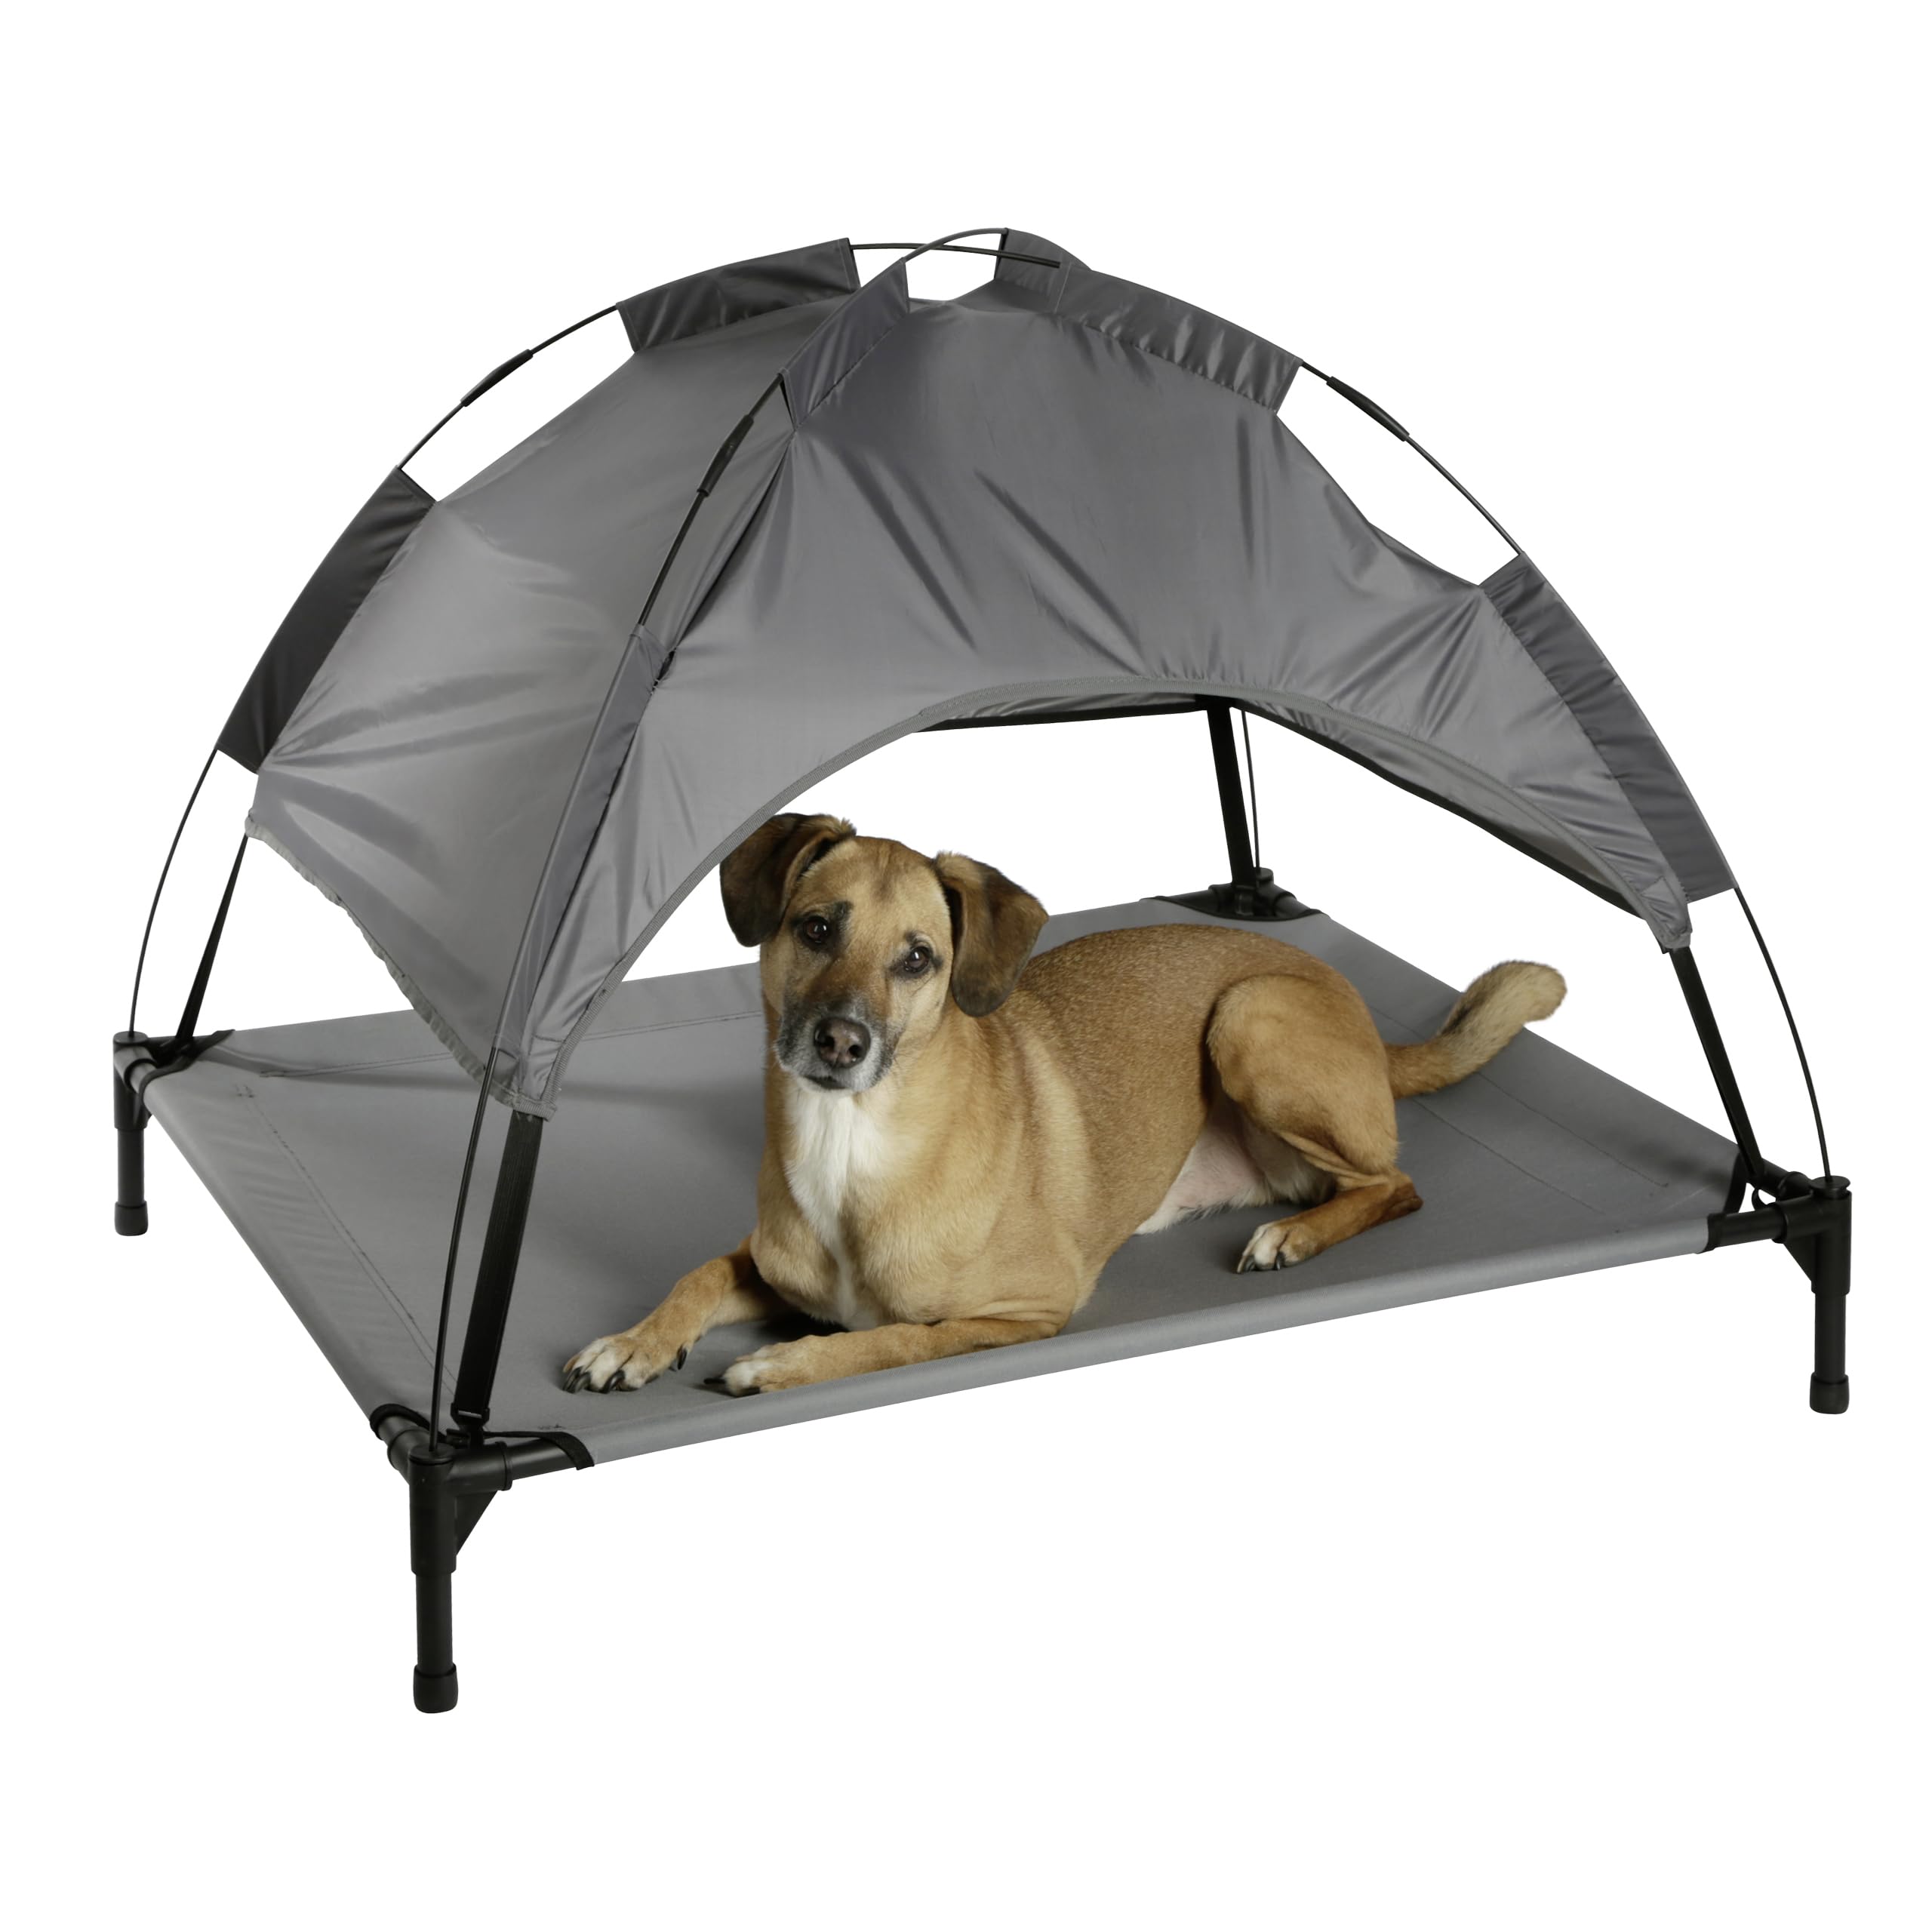 Kerbl Pet Hundeliege Vacation Top, Wetterbeständige Gartenliege für Hunde mit Sonnenschutzdach, Schmutzabweisend, Wasserabweisend, Für große Hunde geeignet